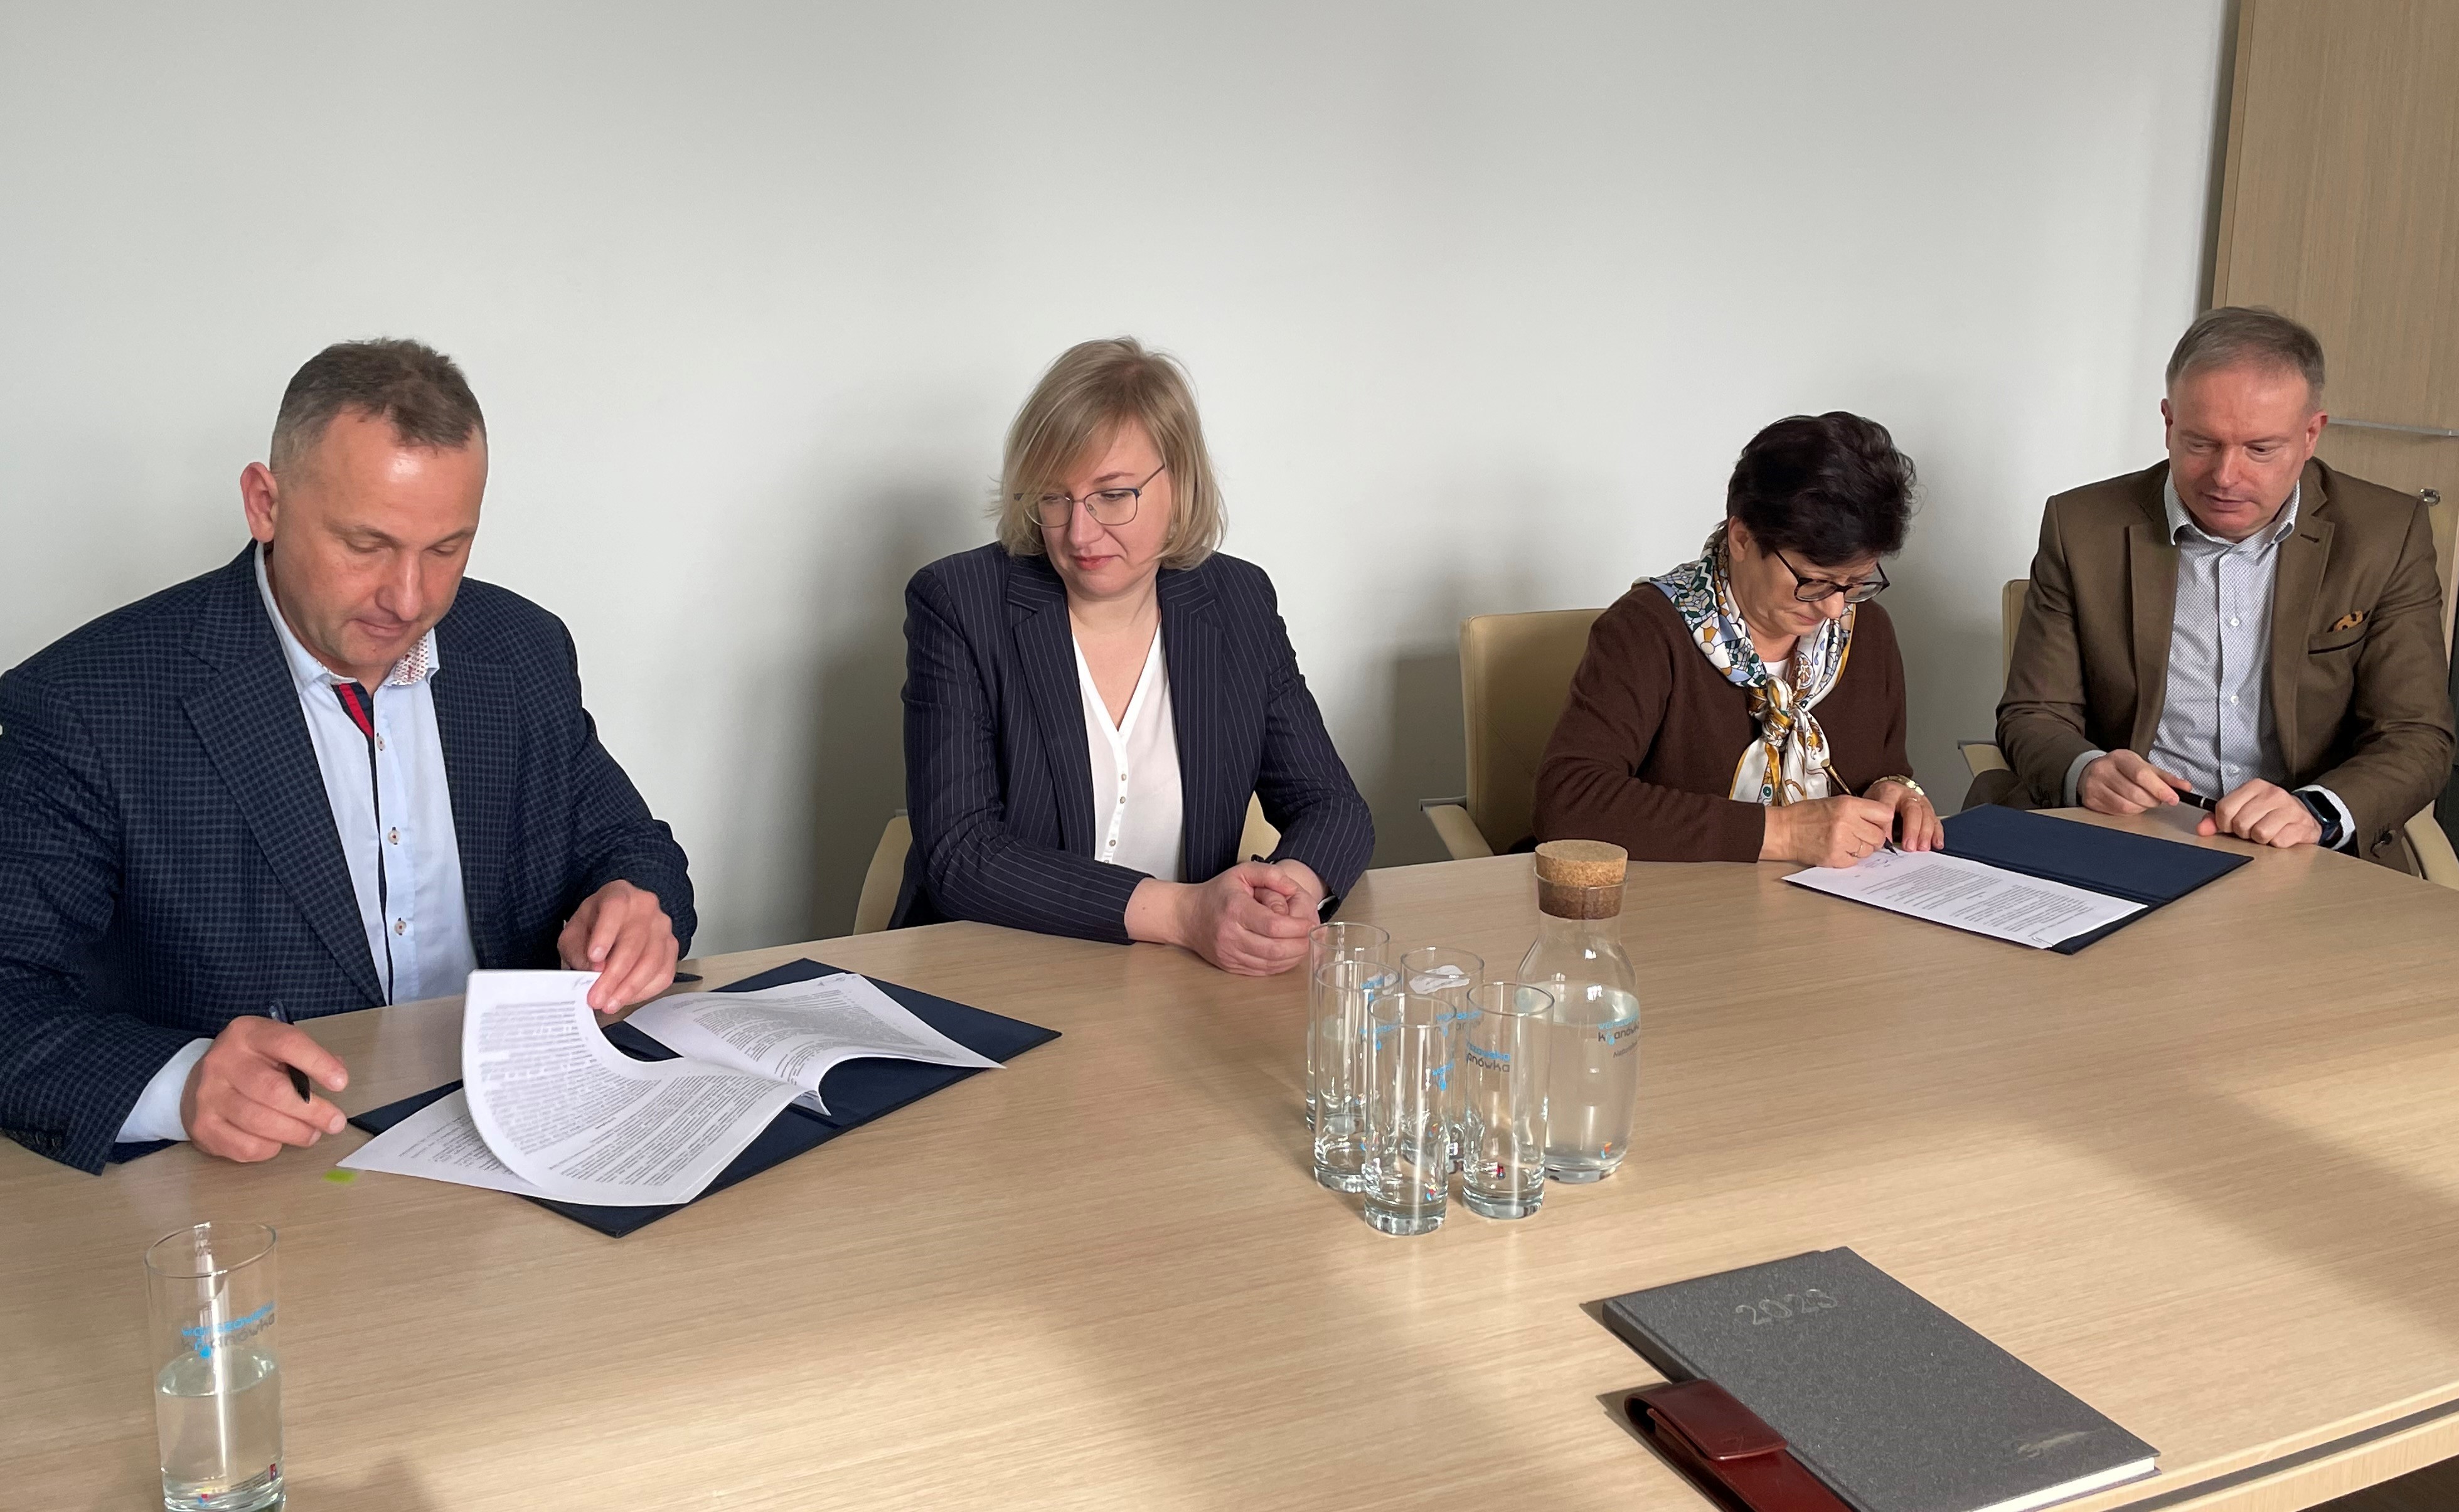 Na zdjęciu przy stole siedza cztery osoby: dwie kobiety i dwóch mężczyzn. Pospisują dokumenty.